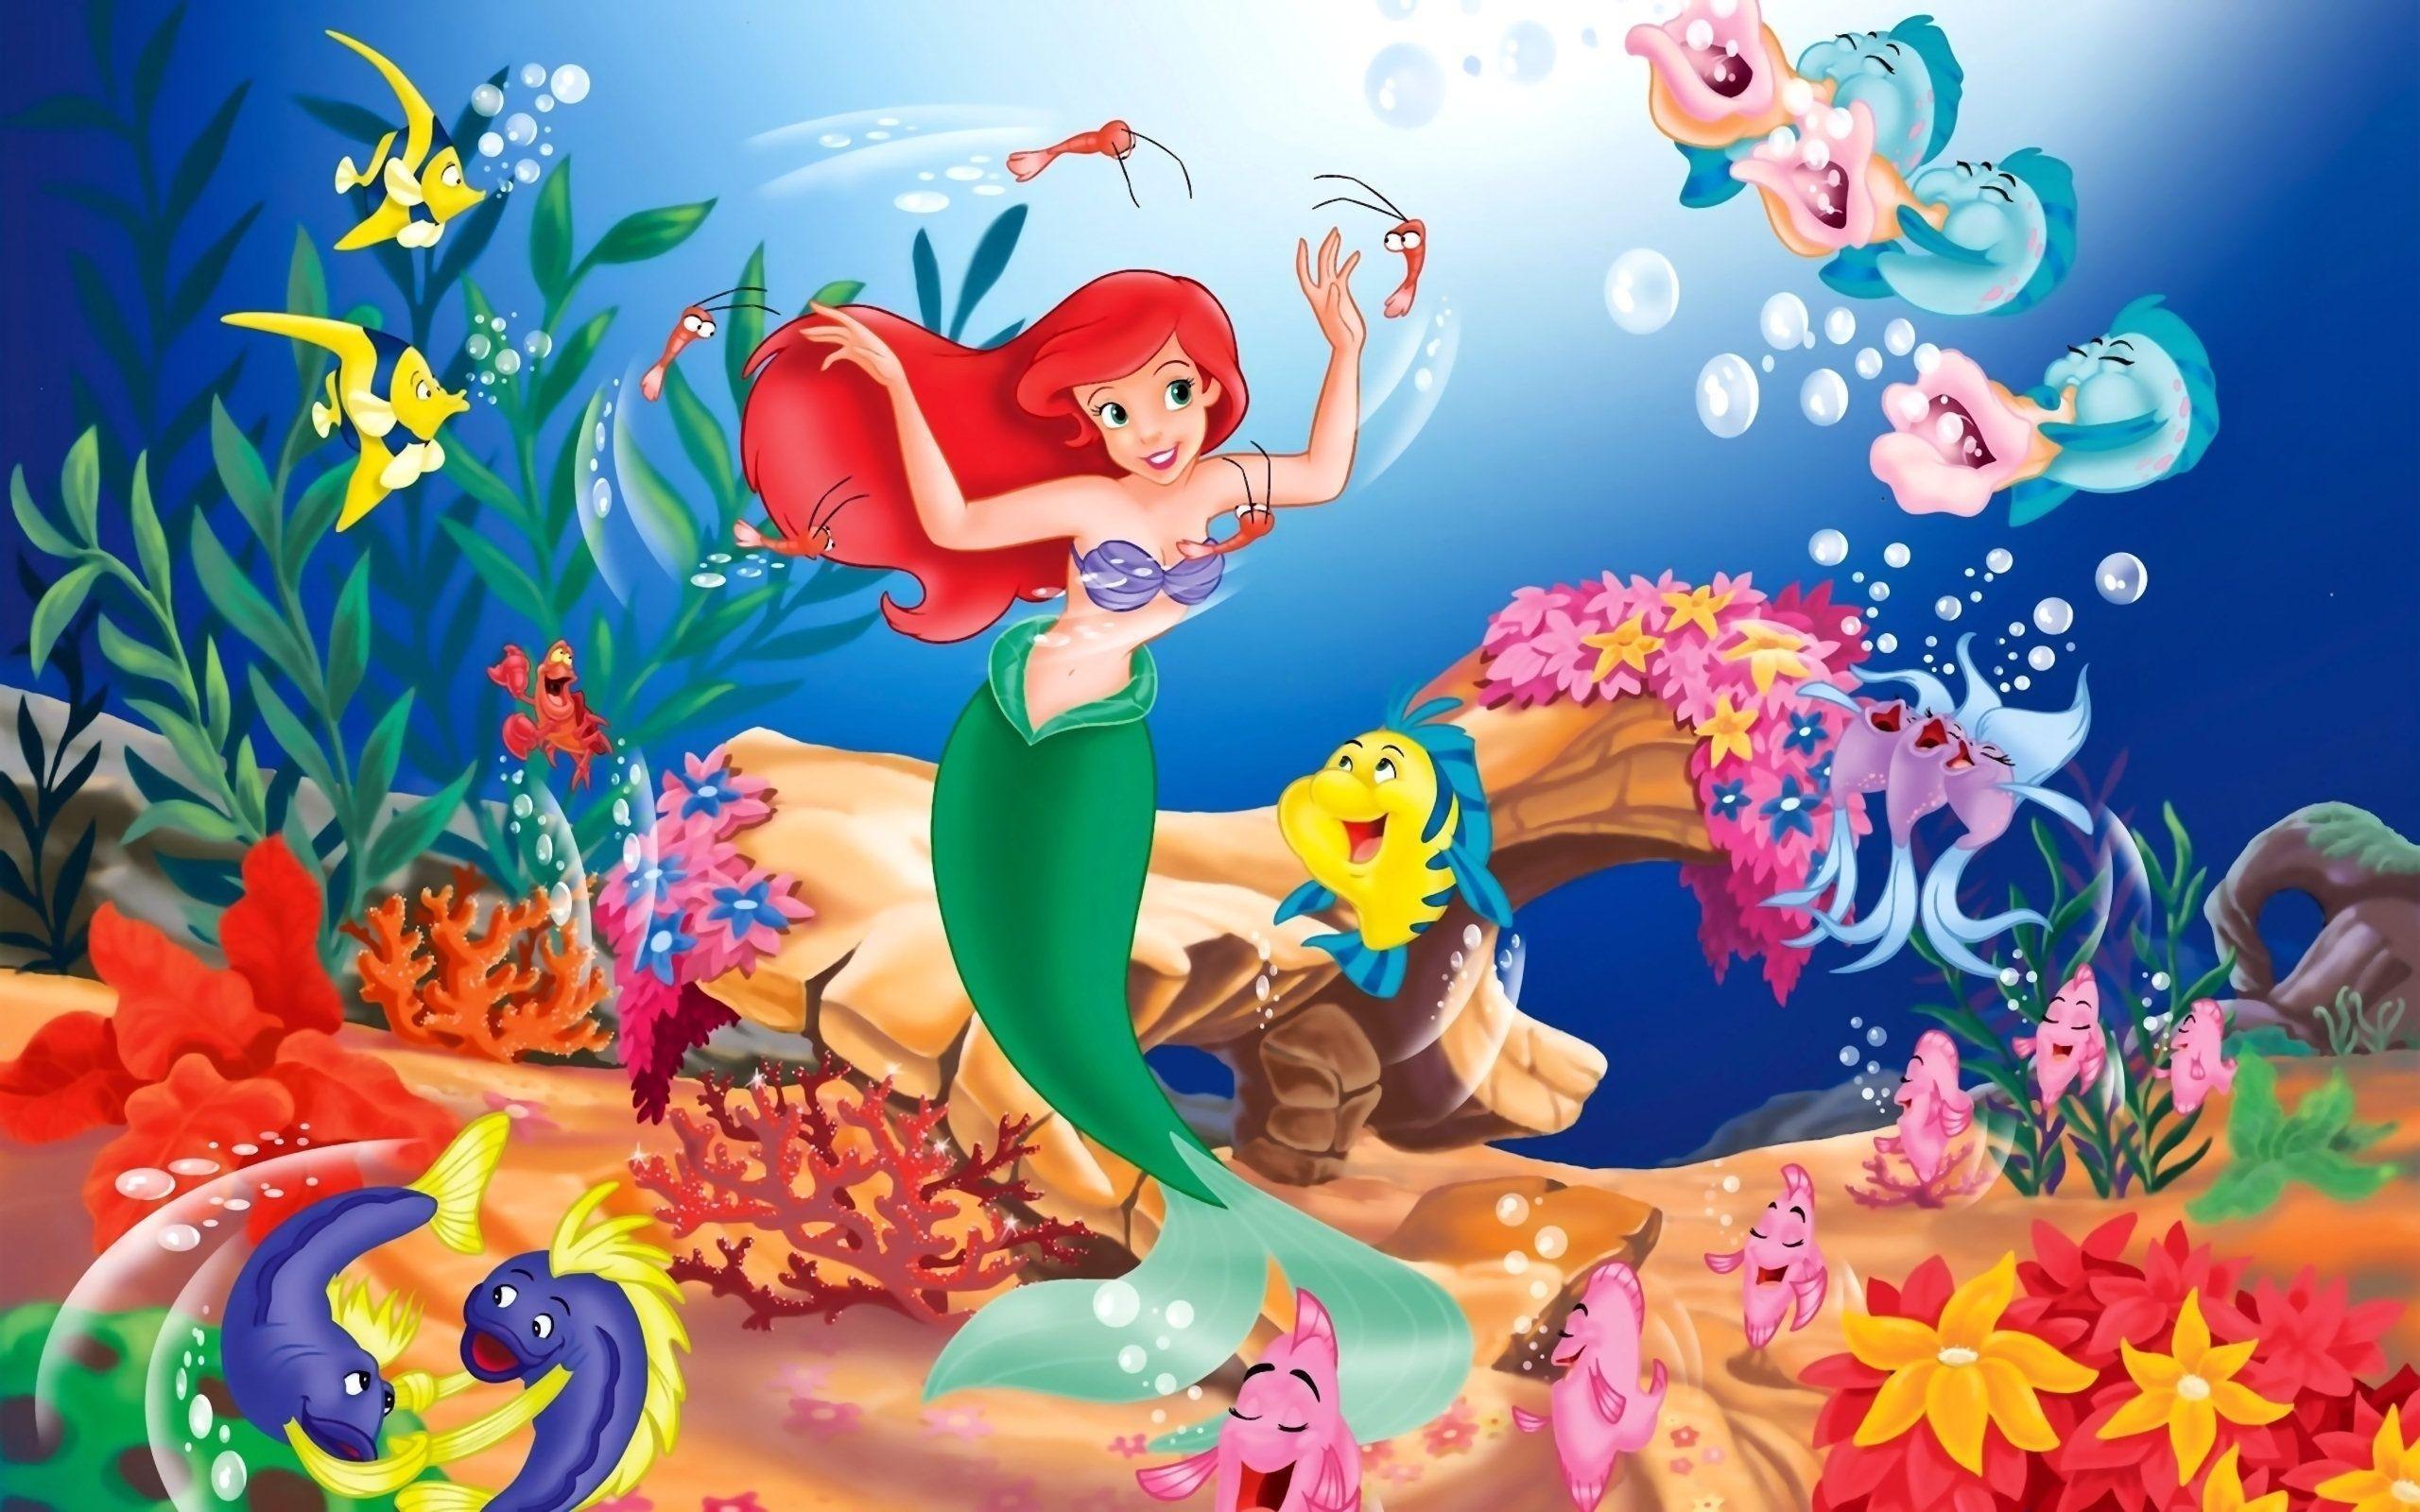 Little Mermaid Wallpapers - Top Free